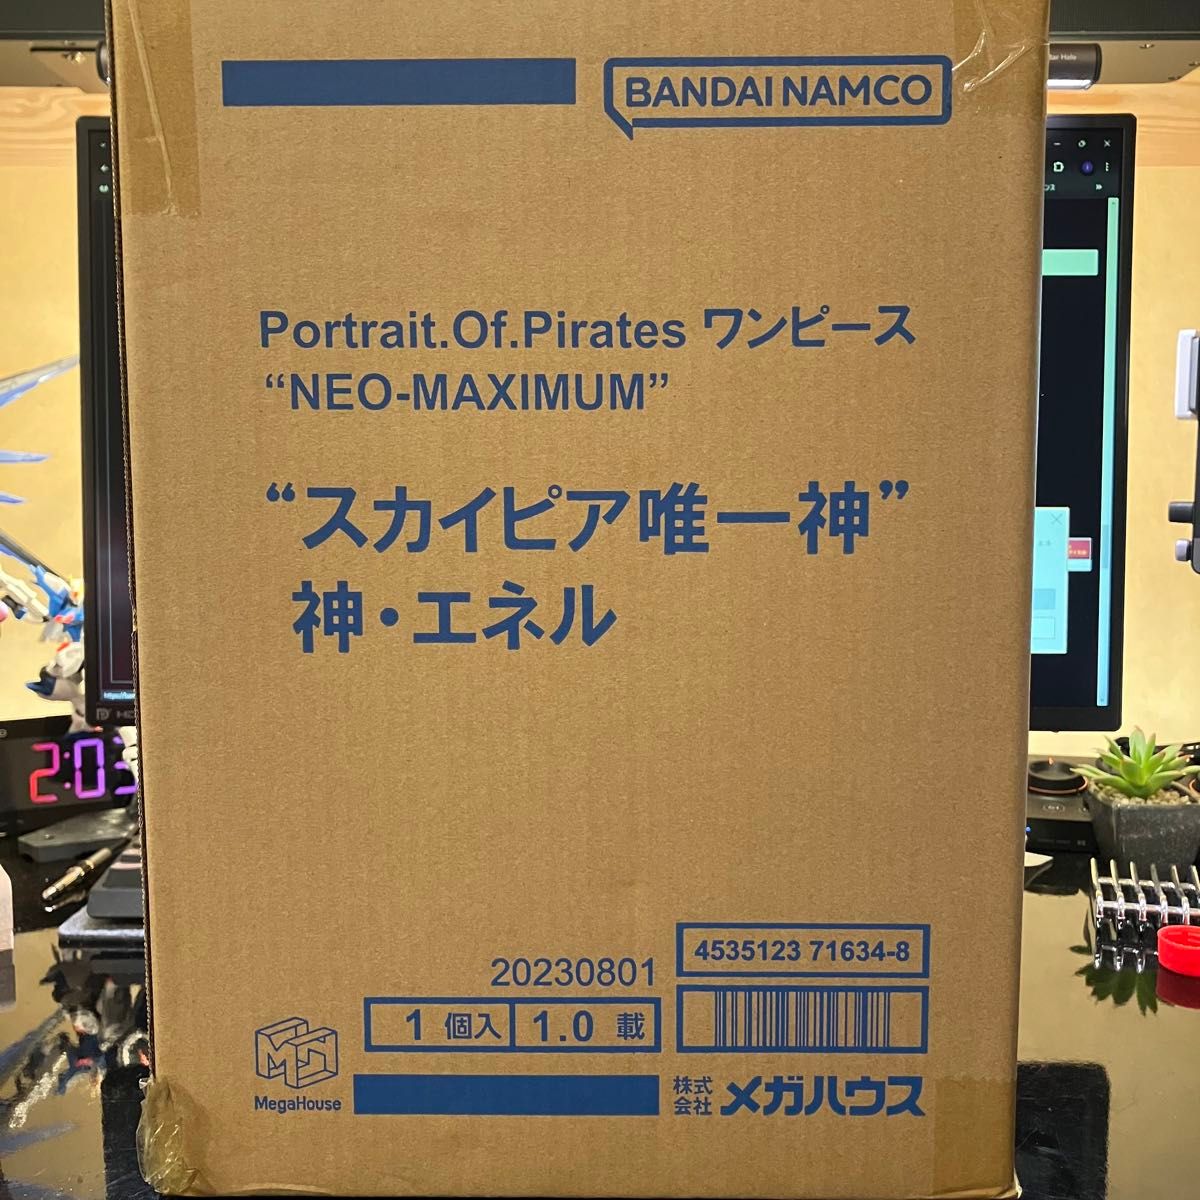 Portrait.Of.Pirates “NEO-MAXIMUM” “スカイピア唯一神” 神・エネル　pop maximum